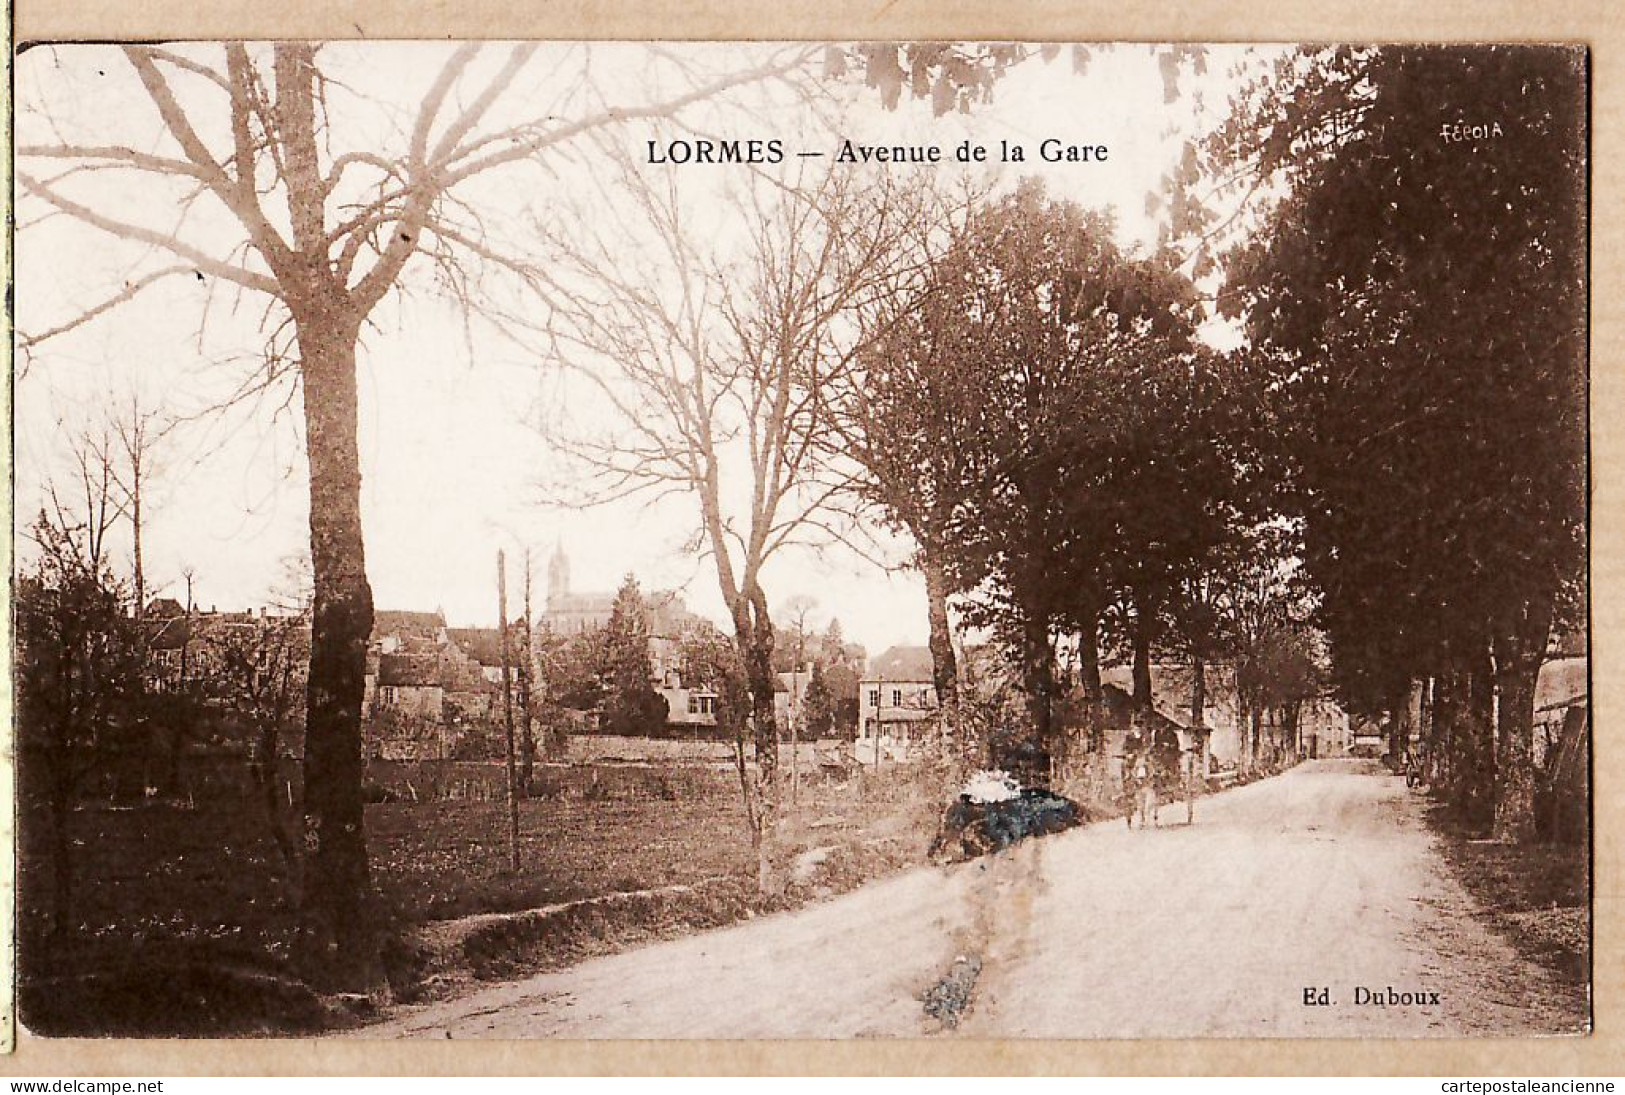 00093 ● LORMES Nièvre-Presse Avenue De La GARE 1940s à TORFOU Brasserie Chantecler Avenue Grammont Tours - Lormes